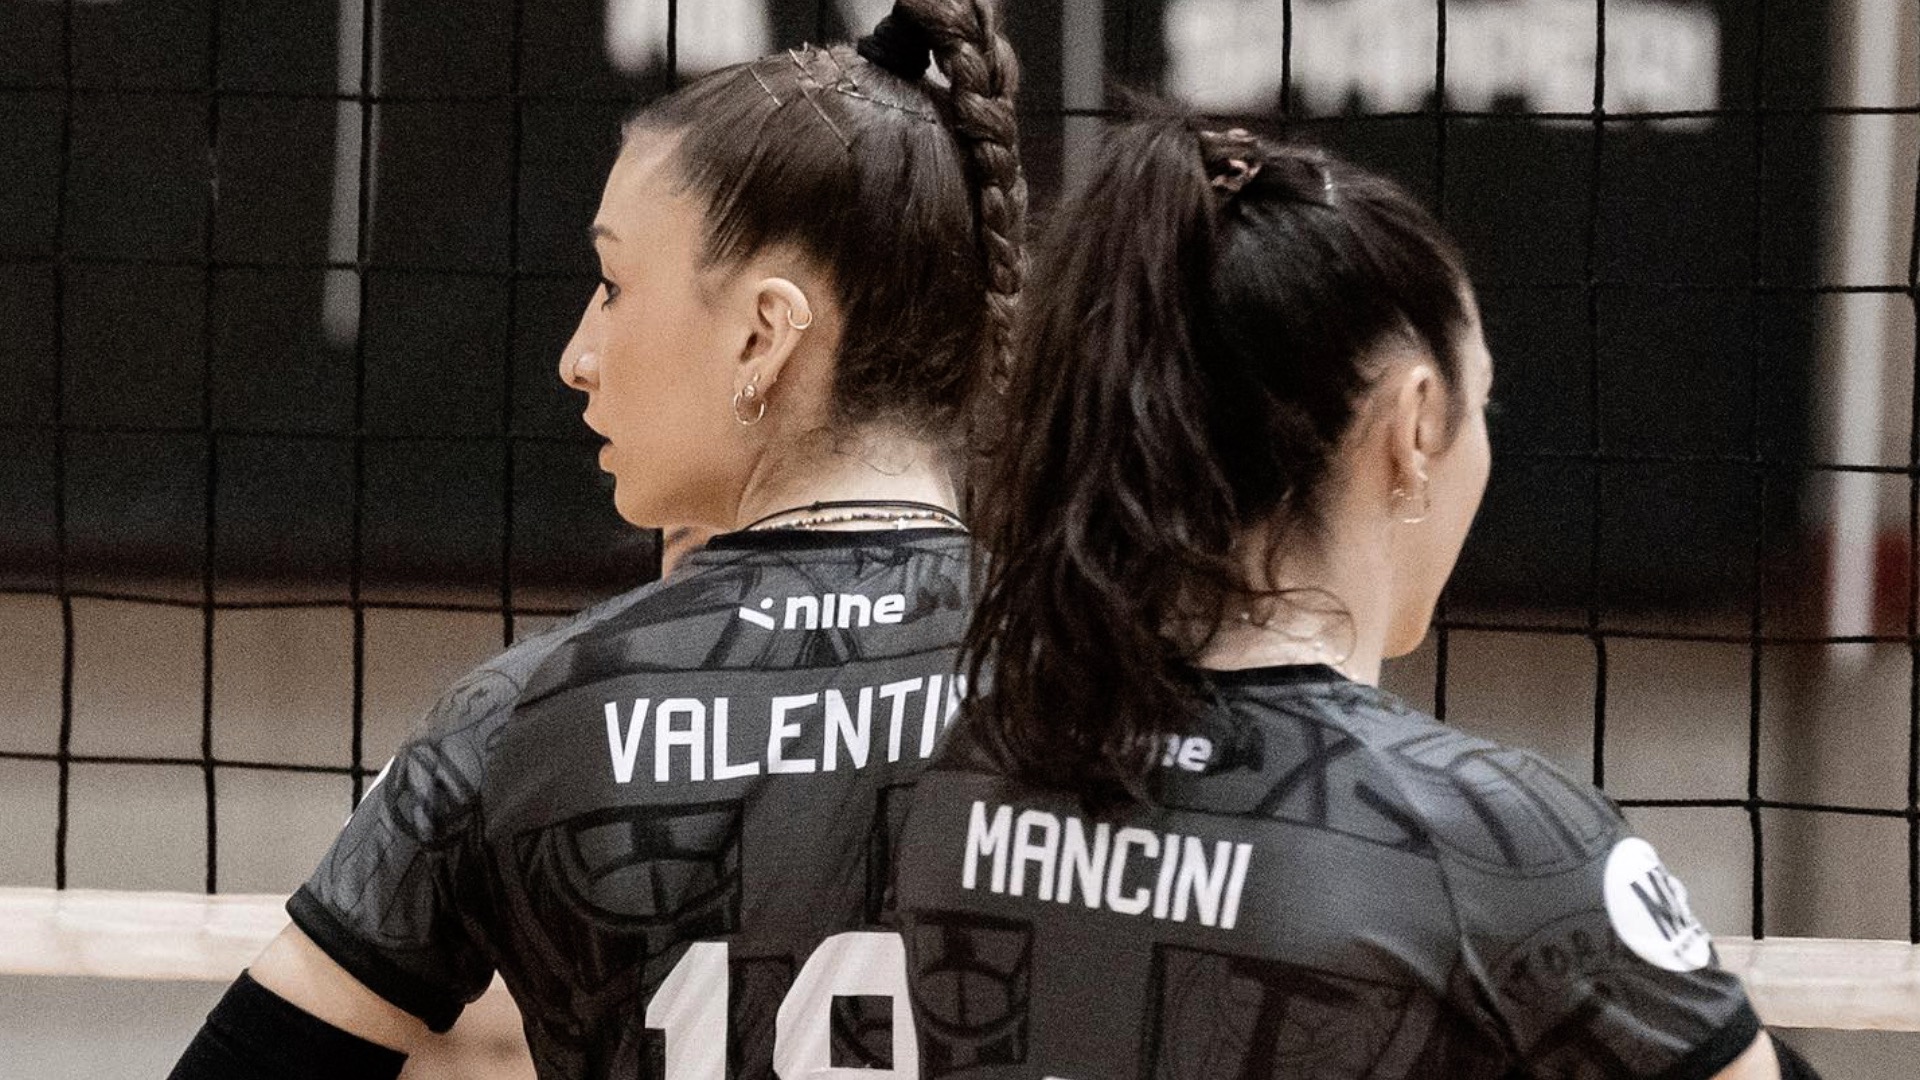 Valentini e Mancini (Trestina Volley)